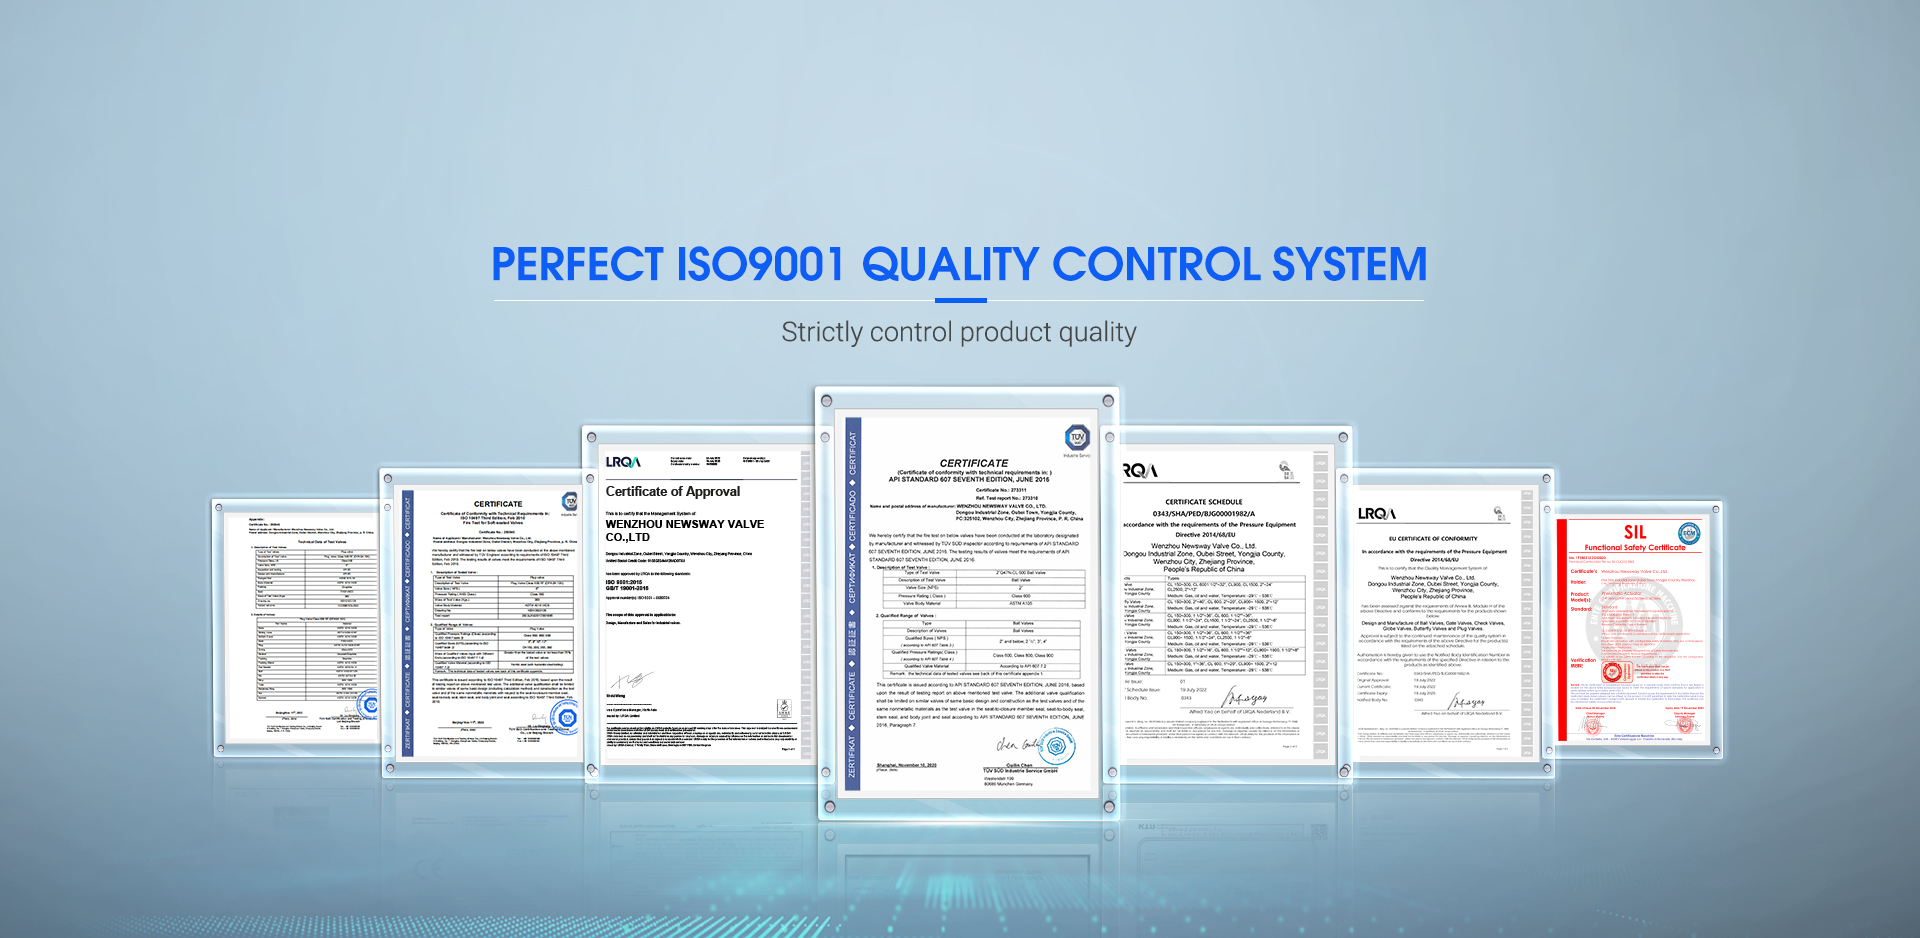 පරිපූර්ණ ISO9001 තත්ත්ව පාලන පද්ධතිය